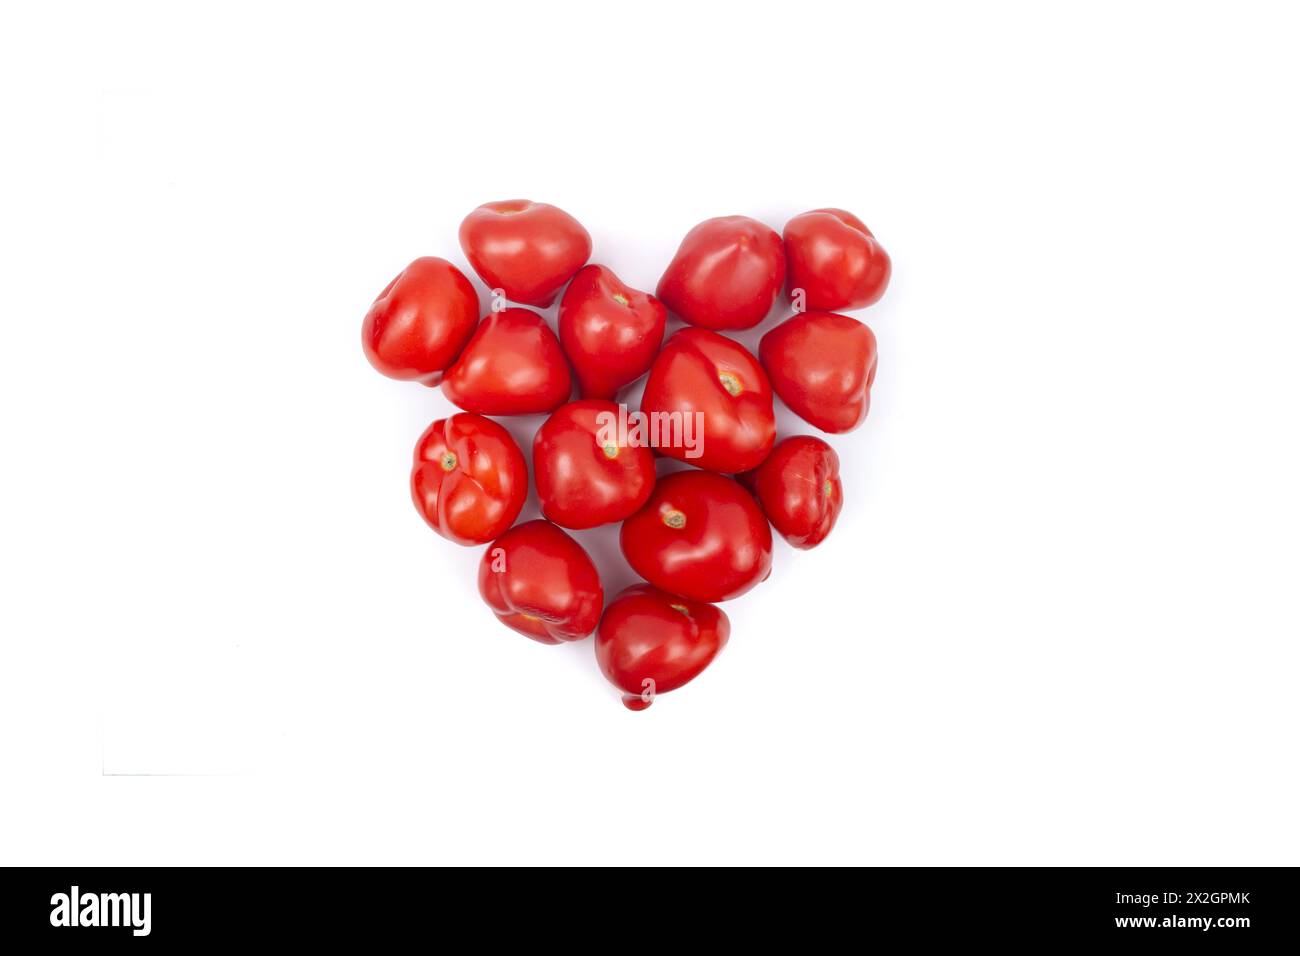 Pomodori disposti a forma di cuore, isolati sul bianco Foto Stock